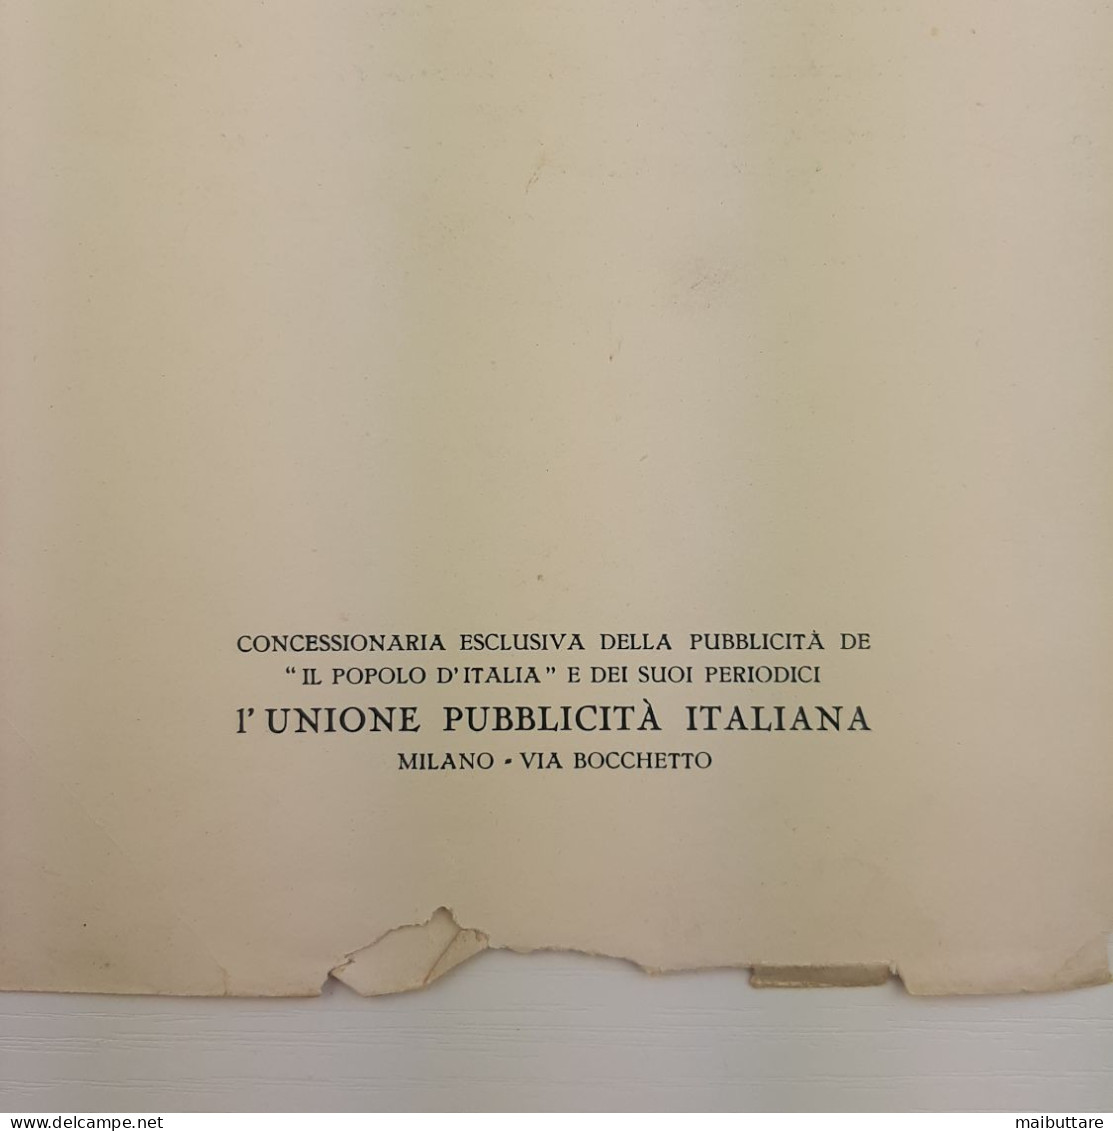 LA MARCIA SU ROMA - anno 1928 - album ricordo agli abbonati de "IL POPOLO D'ITALIA" 1928